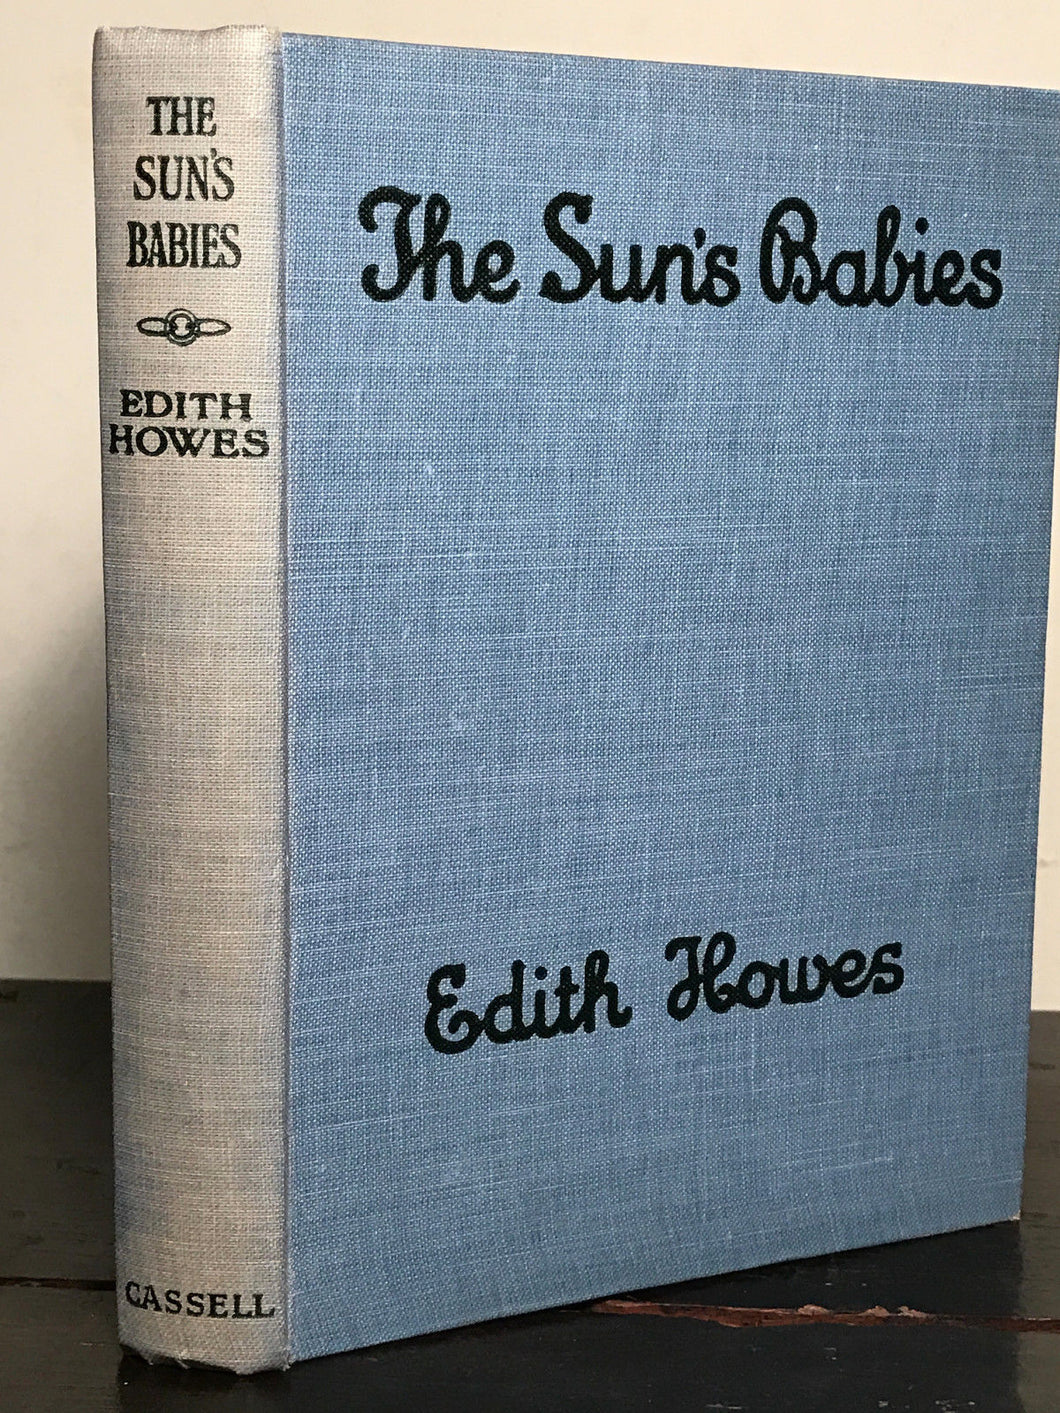 BINDING ERROR - THE SUN'S BABIES by Edith Howes, 1st / 1st 1926 FAIRIES